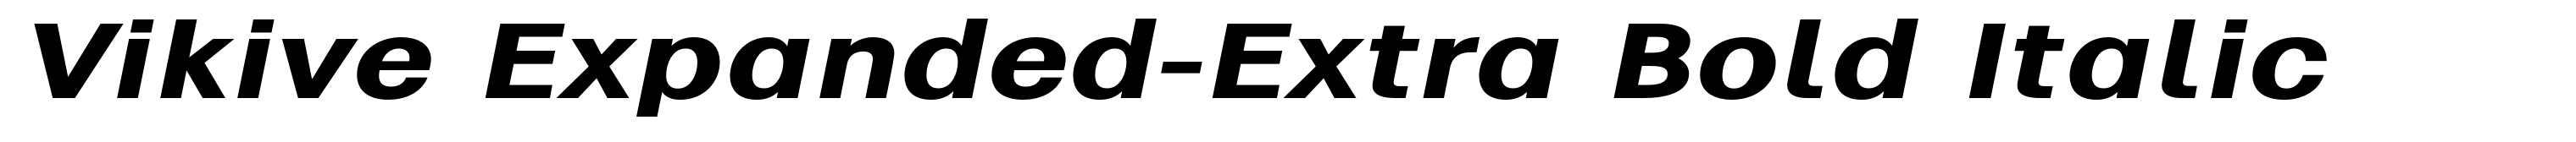 Vikive Expanded-Extra Bold Italic